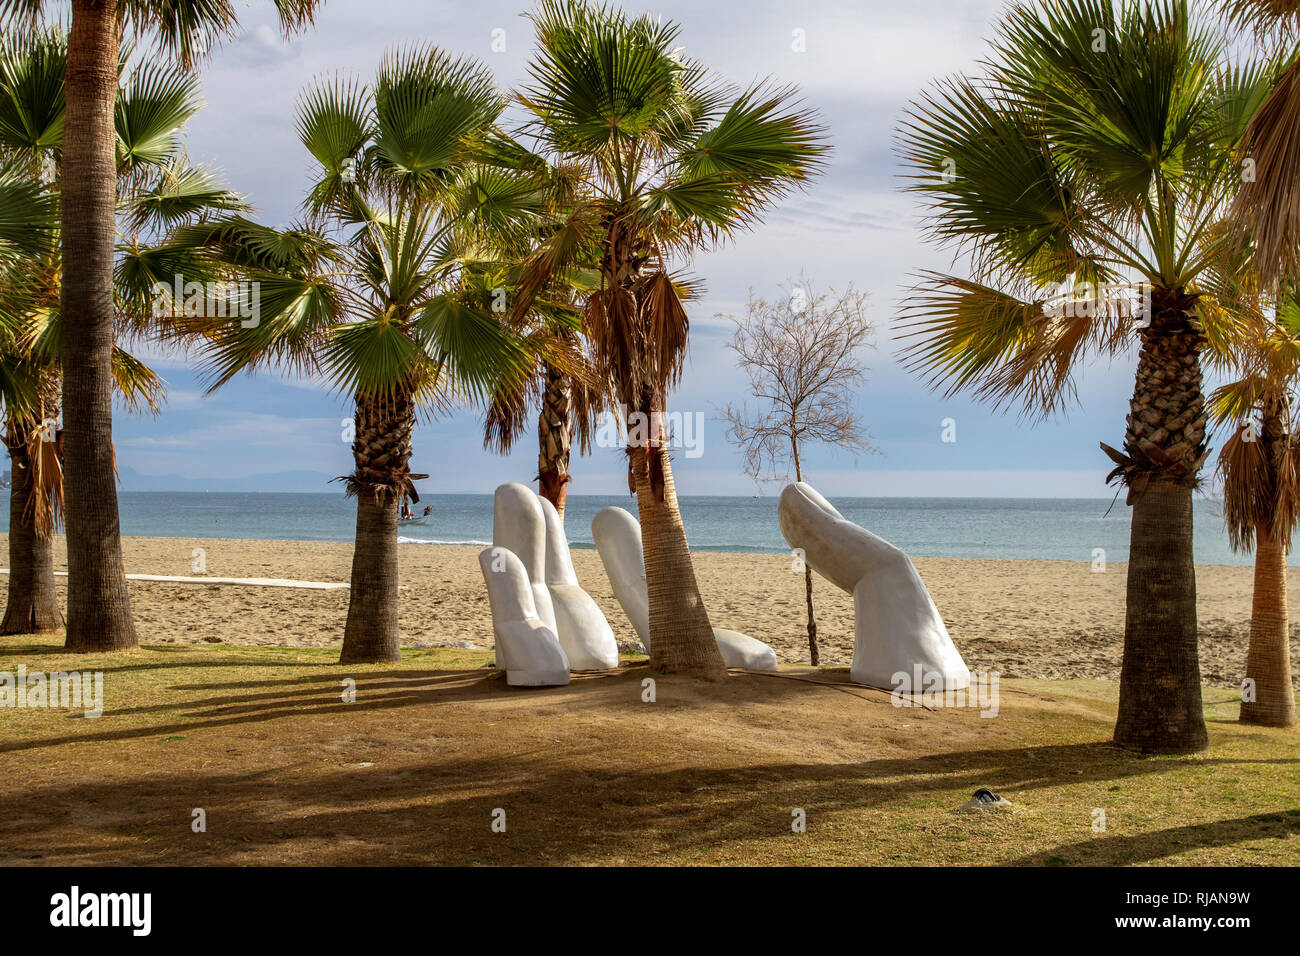 Los Boliches, España. La escultura a mano abierta de Charo García erigida en 2015 e incrustada en palmeral en la playa de los Boliches, España. Foto de stock